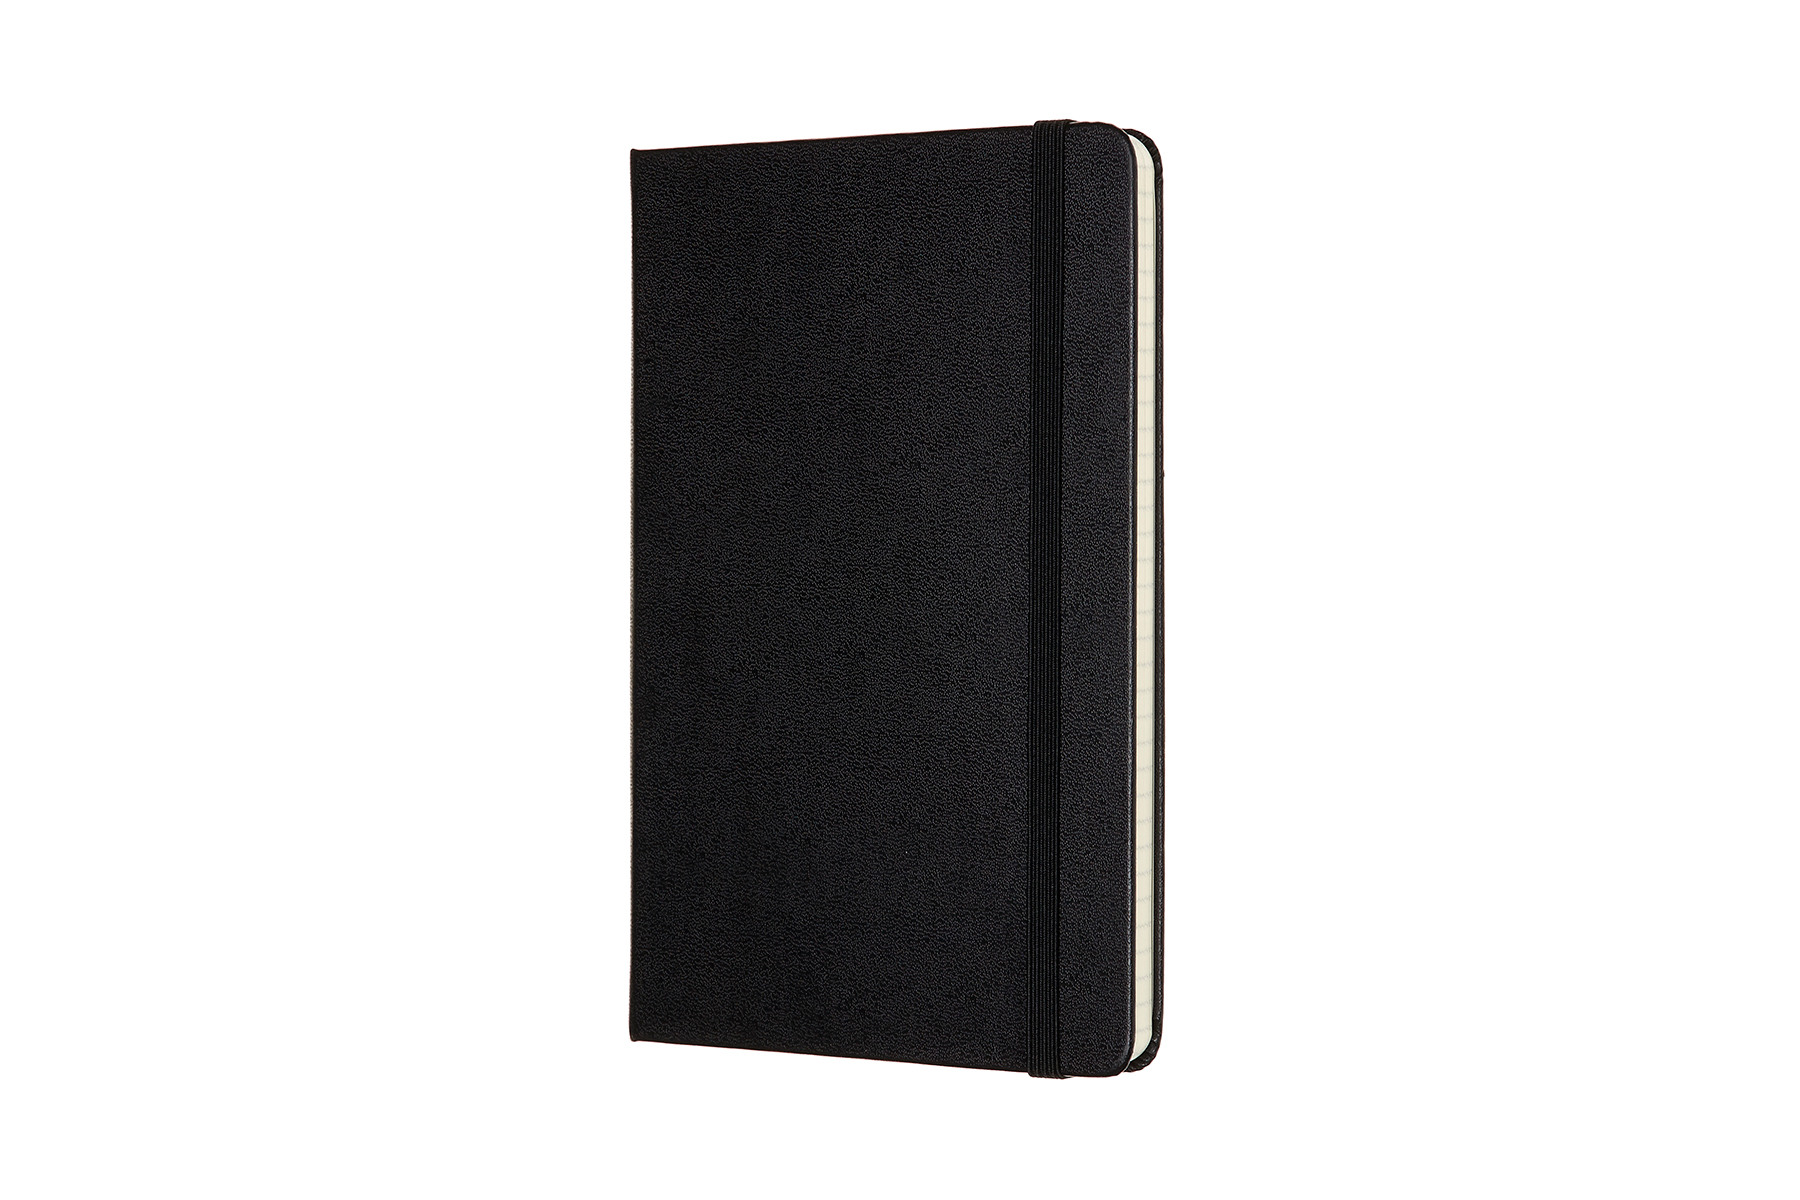 MOLESKINE Carnet Medium HC 18,2x11,8cm 626598 quadrillé, noir, 208 pages